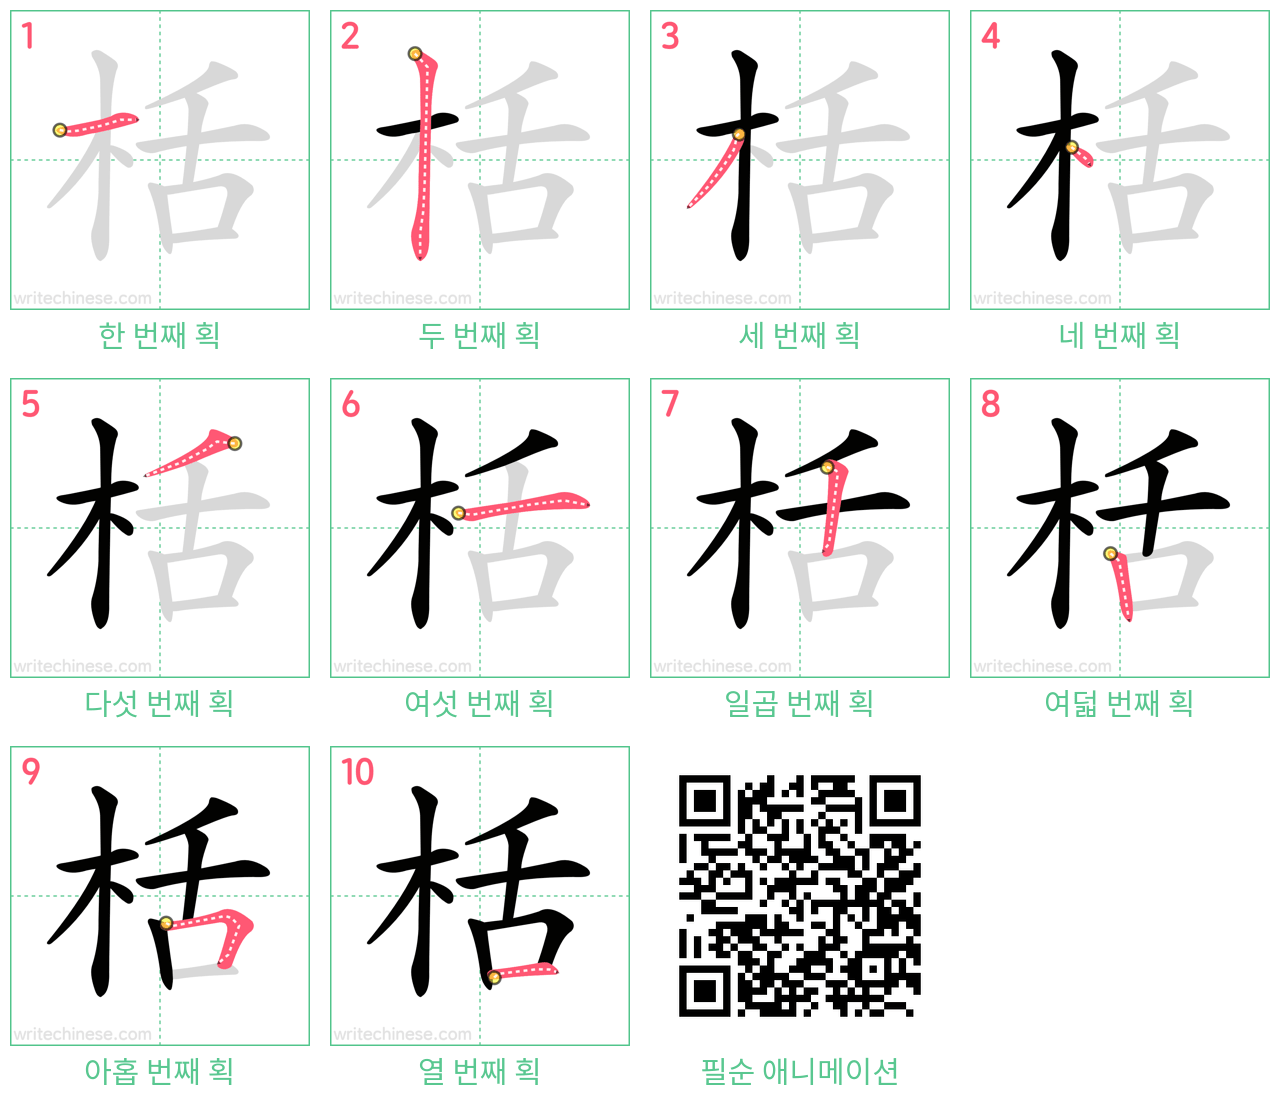 栝 step-by-step stroke order diagrams